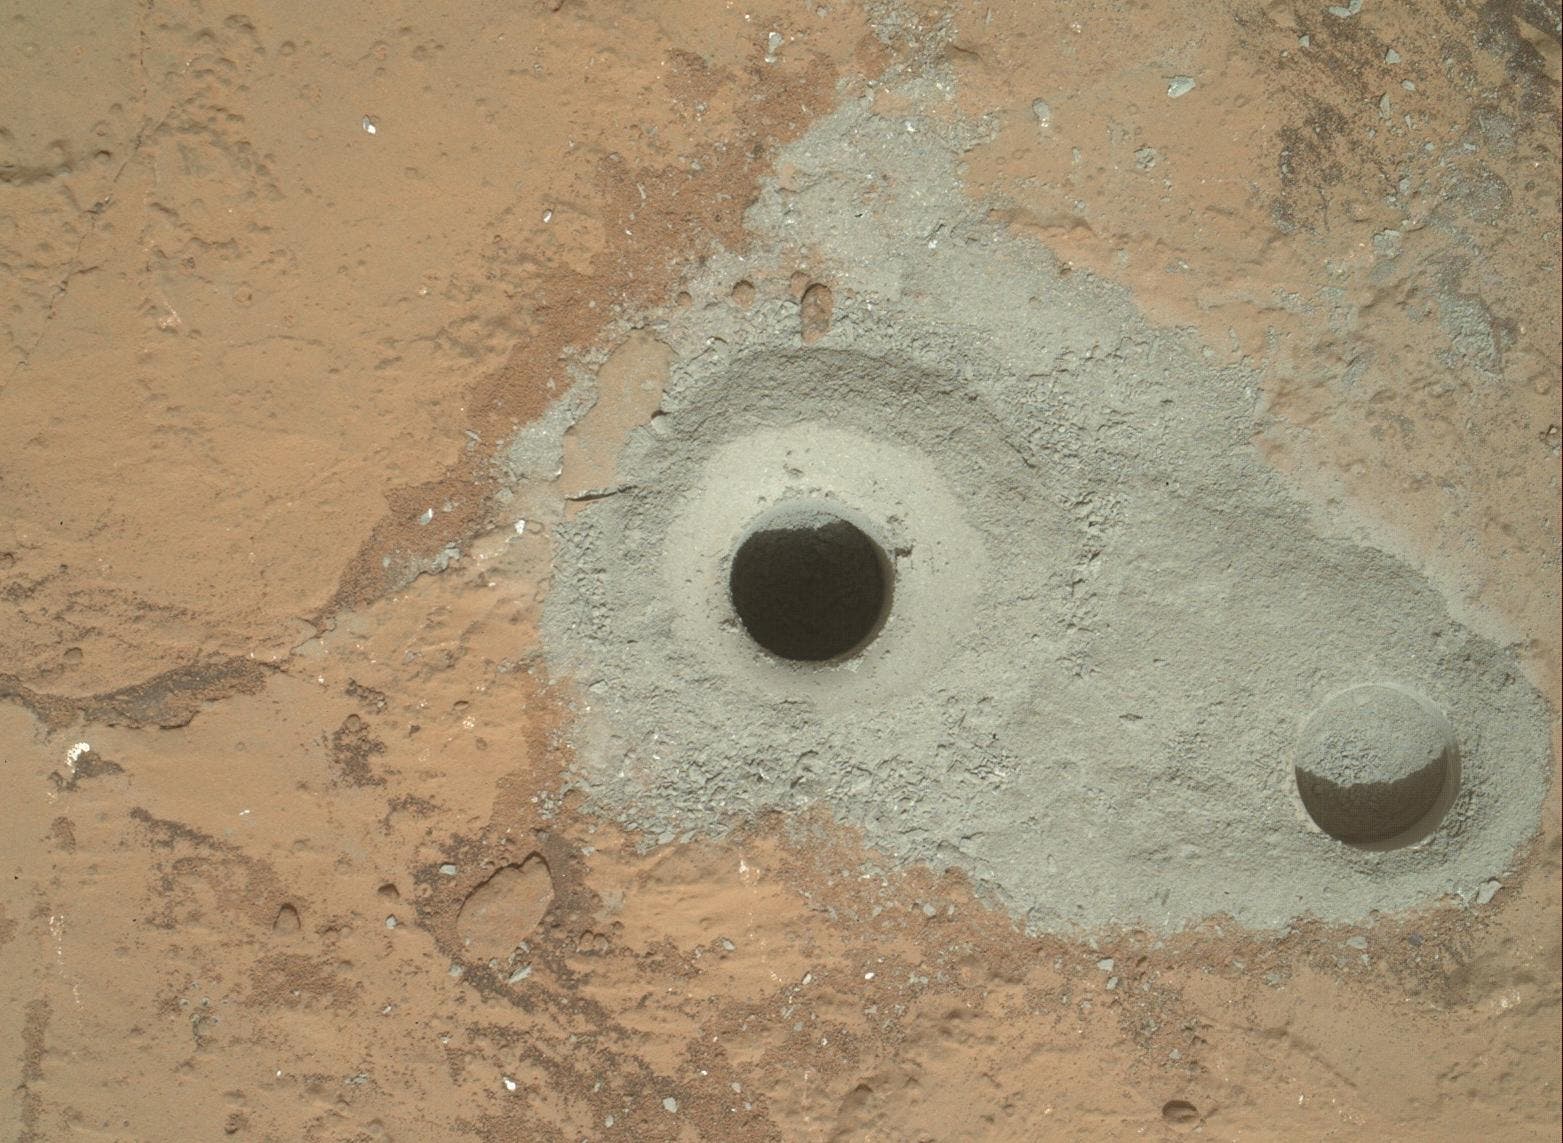 Das erste Bohrloch auf dem Mars